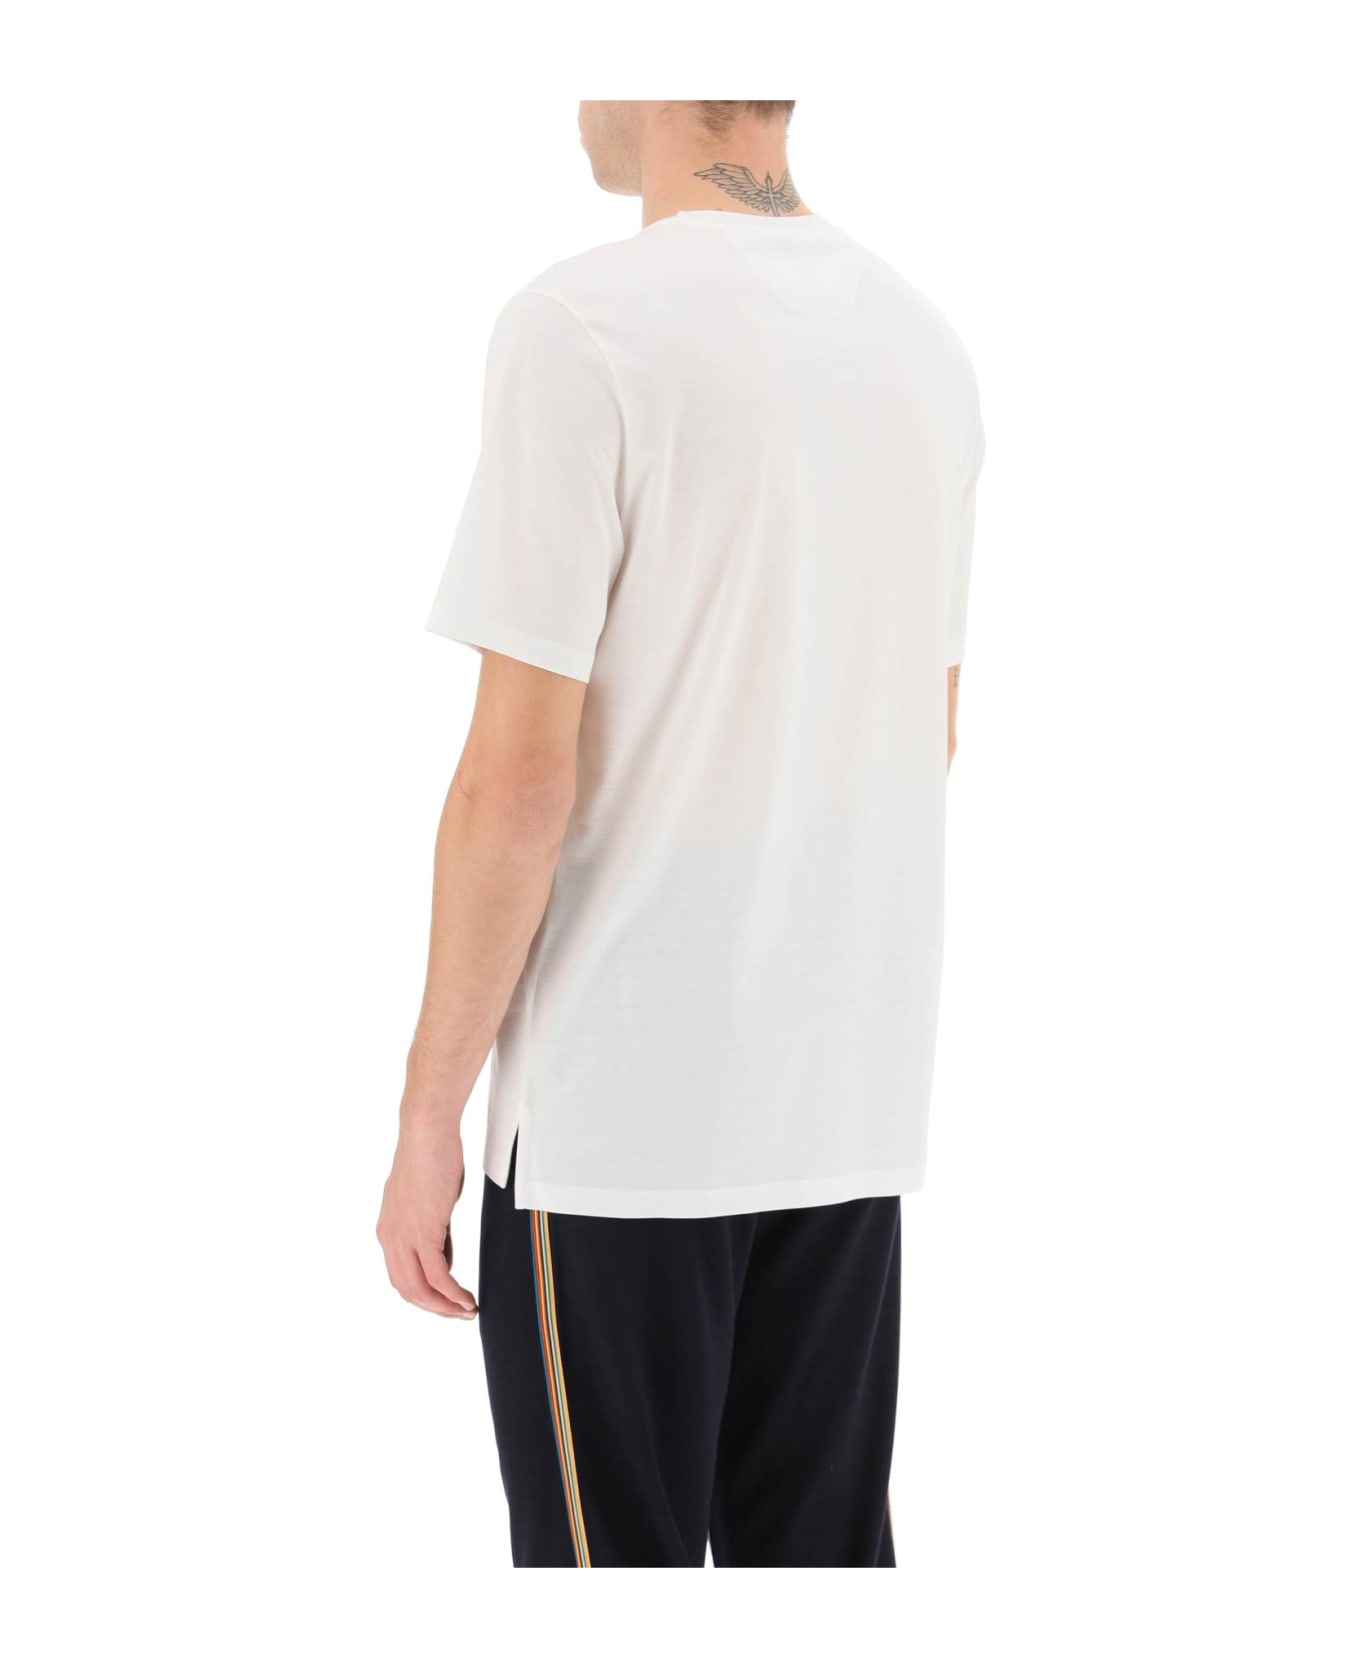 Paul Smith Signature Stripe Pocket T-shirt - WHITE (White)